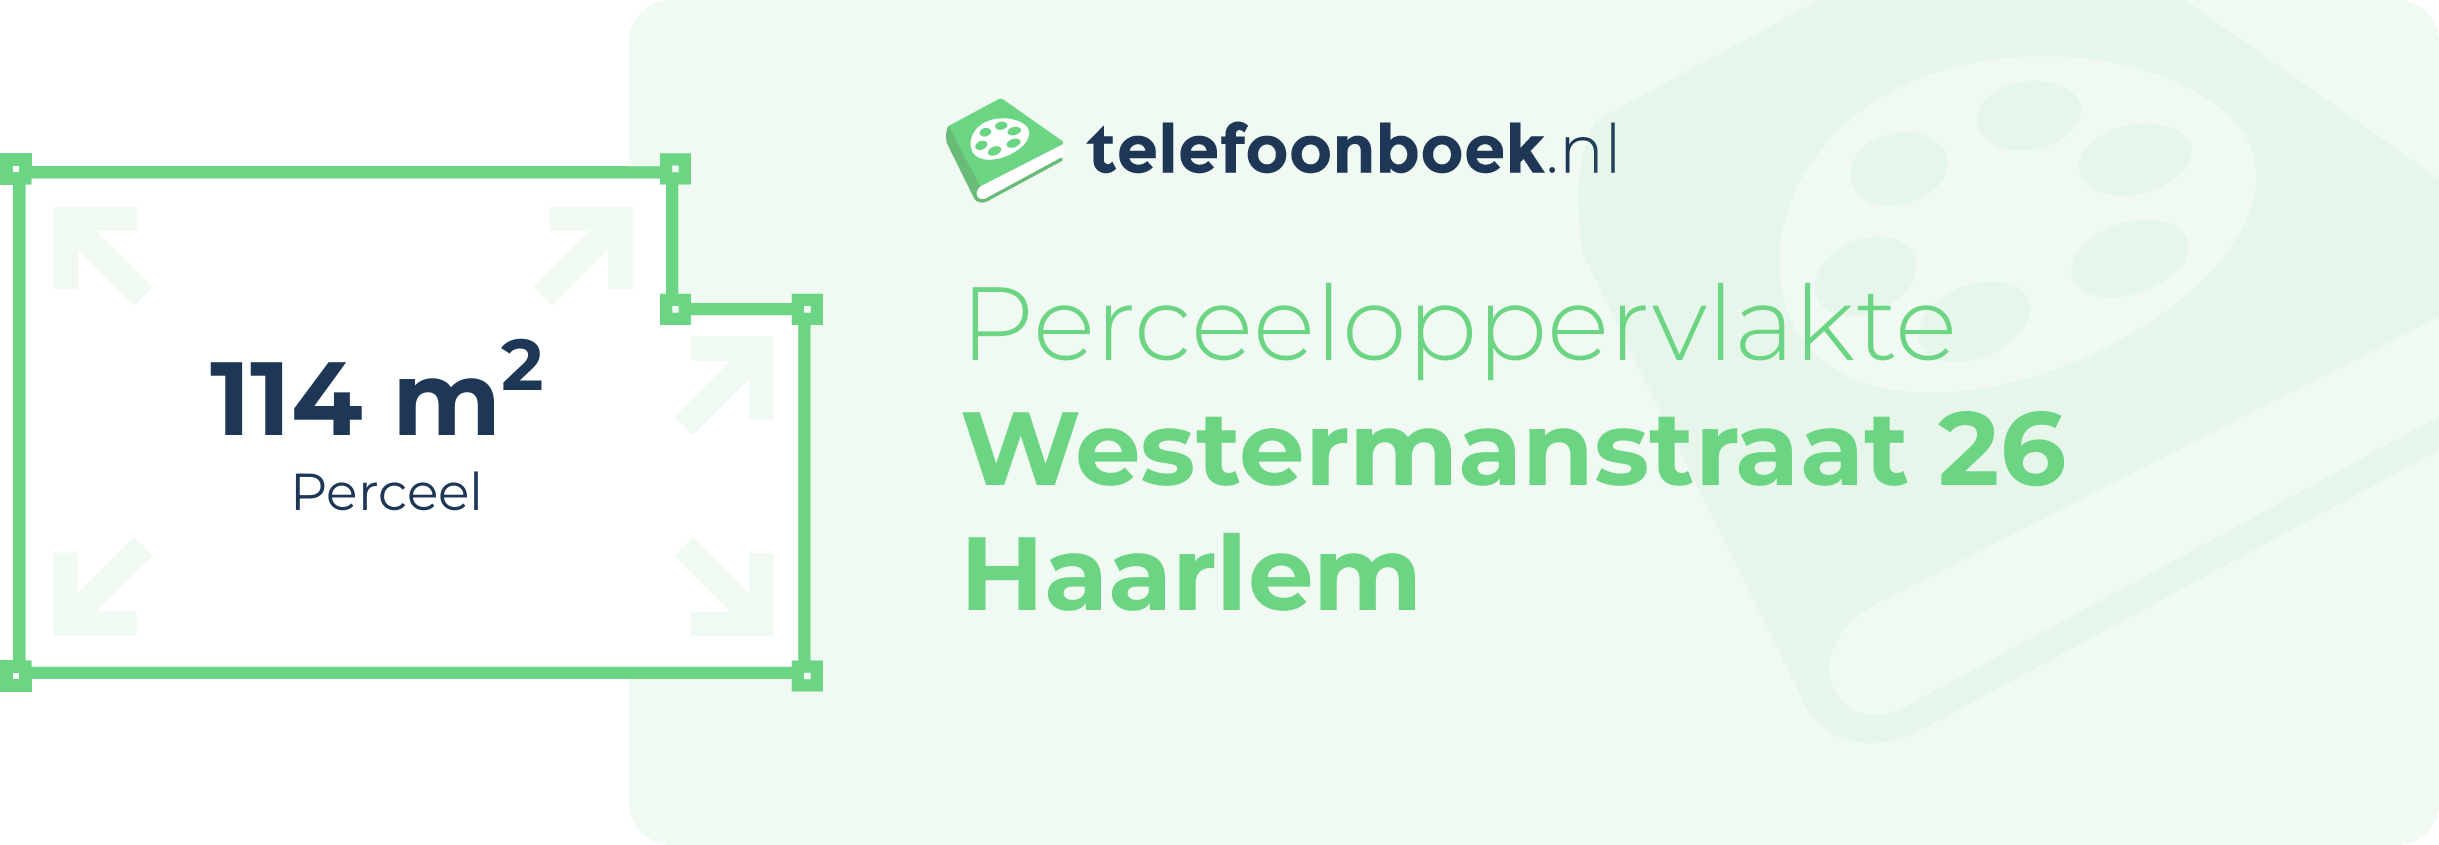 Perceeloppervlakte Westermanstraat 26 Haarlem